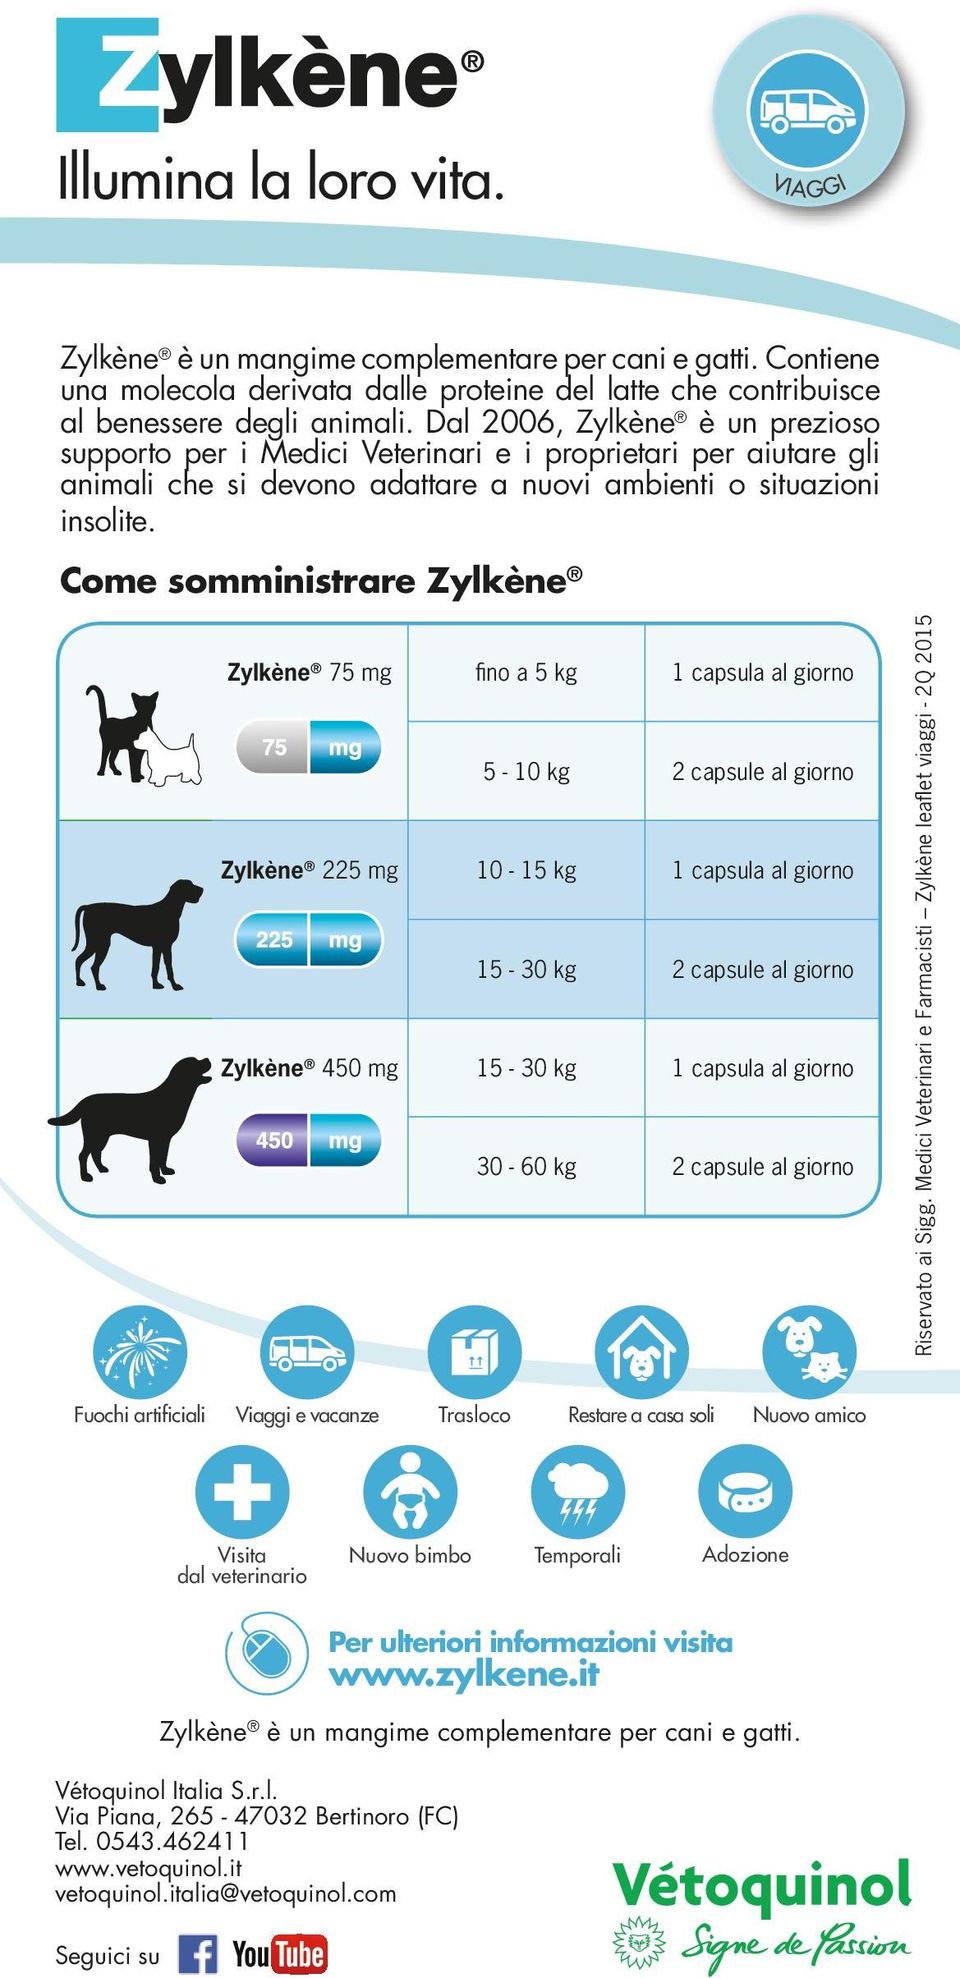 Come somministrare Zylkène Zylkène 75 mg fino a 5 kg 1 capsula al giorno 5-10 kg 2 capsule al giorno Zylkène 225 mg 10-15 kg 1 capsula al giorno 15-30 kg 2 capsule al giorno Zylkène 450 mg 15-30 kg 1